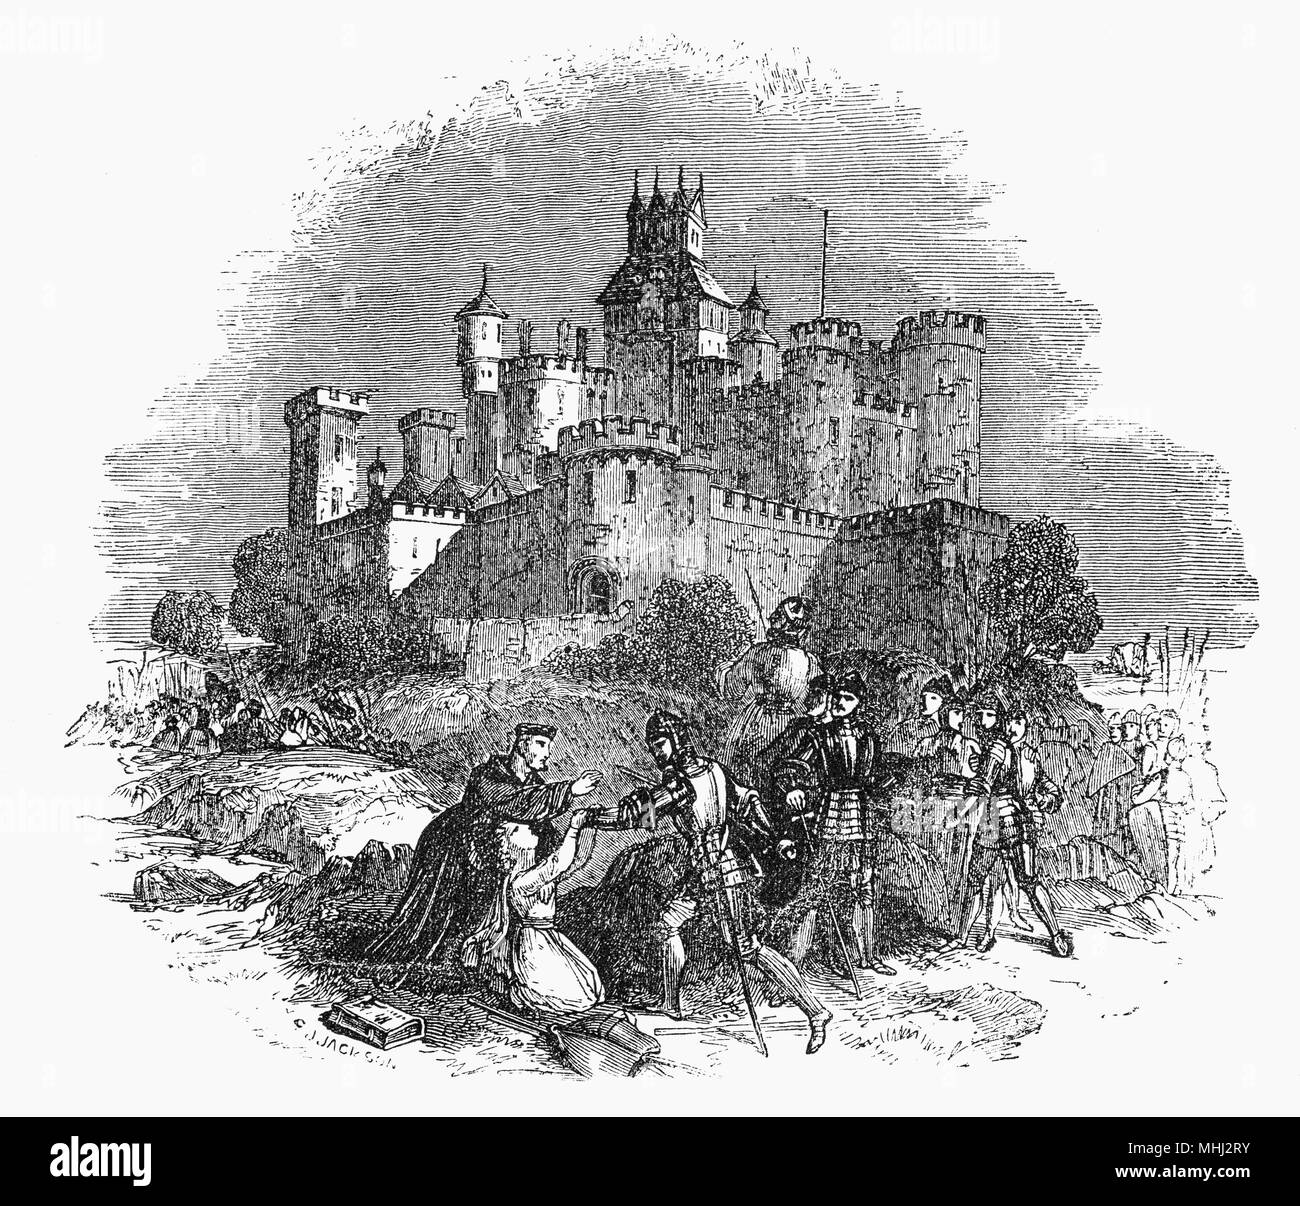 Castello di Sandal è una rovina il castello medievale in sandalo Magna, un sobborgo della città di Wakefield nel West Yorkshire, Inghilterra. Nel dicembre 1460, durante la guerra dei Roses, Richard Plantagenet fatto un offerta per il trono e sono andato al Castello di Sandal, sia di consolidare la sua posizione o per contrastare Lancastrian dissenso. Egli aveva un esercito di 3.000-8.000 uomini ma il 30 dicembre nella battaglia di Wakefield, egli è stato superato e outmaneuvered dalla Regina Margaret's esercito, proveniente dal vicino a Pontefract. Richard ha subito una schiacciante sconfitta e sia lui che il suo giovane figlio Edmund, Conte di Rutland sono stati uccisi. Foto Stock